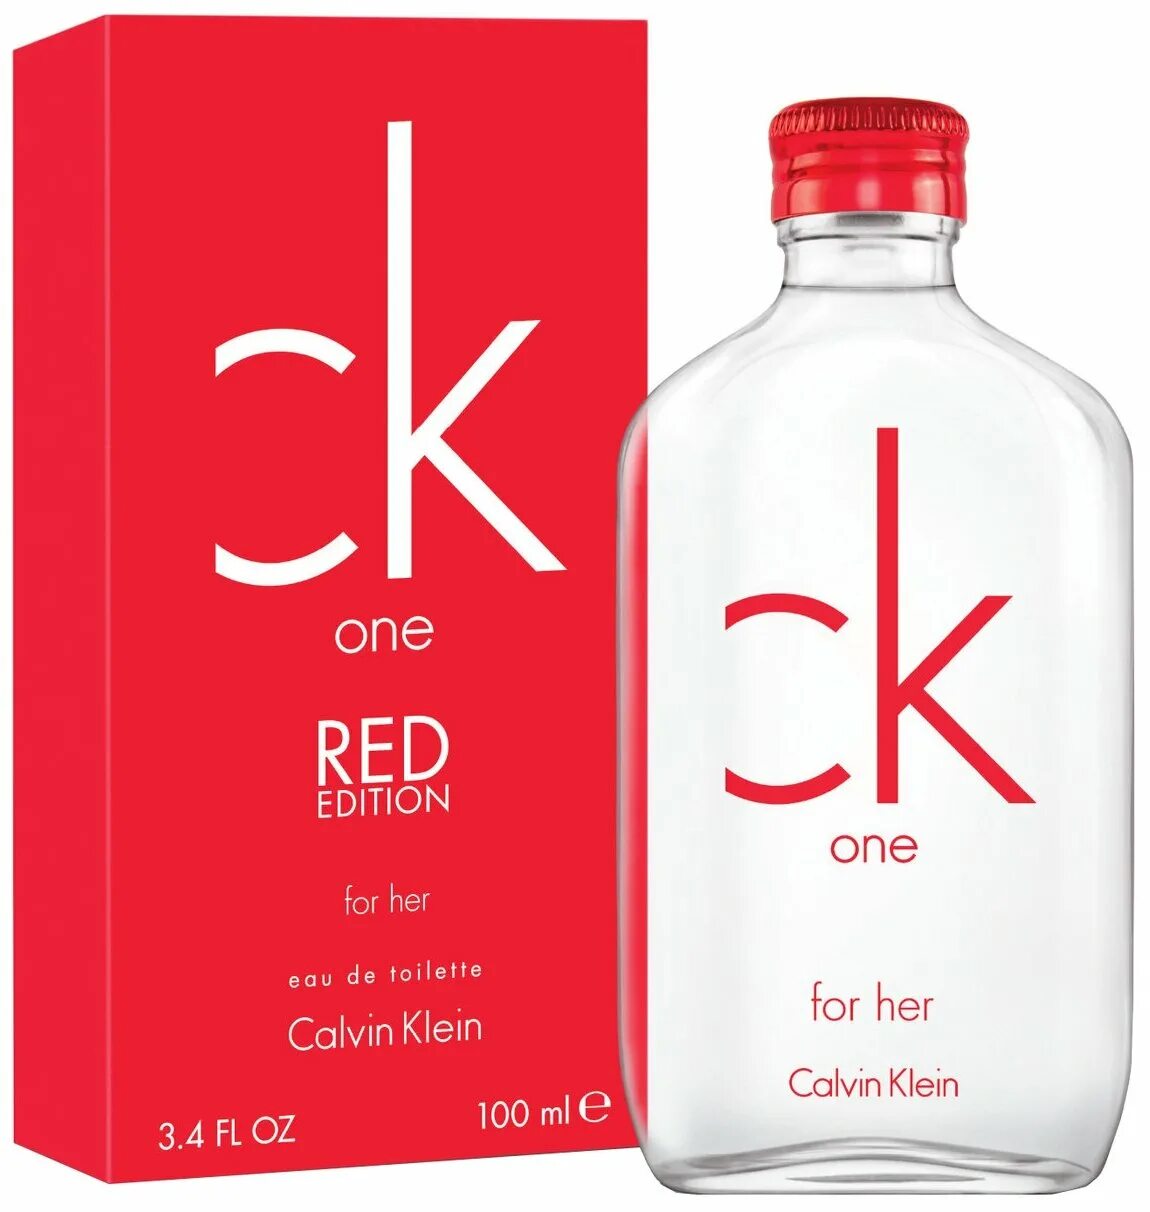 Кельвин кляйн духи отзывы. CK one Calvin Klein. Calvin Klein one Red Edition Perfume. Calvin Klein one EDT 100ml. Туалетная вода Calvin Klein CK one.